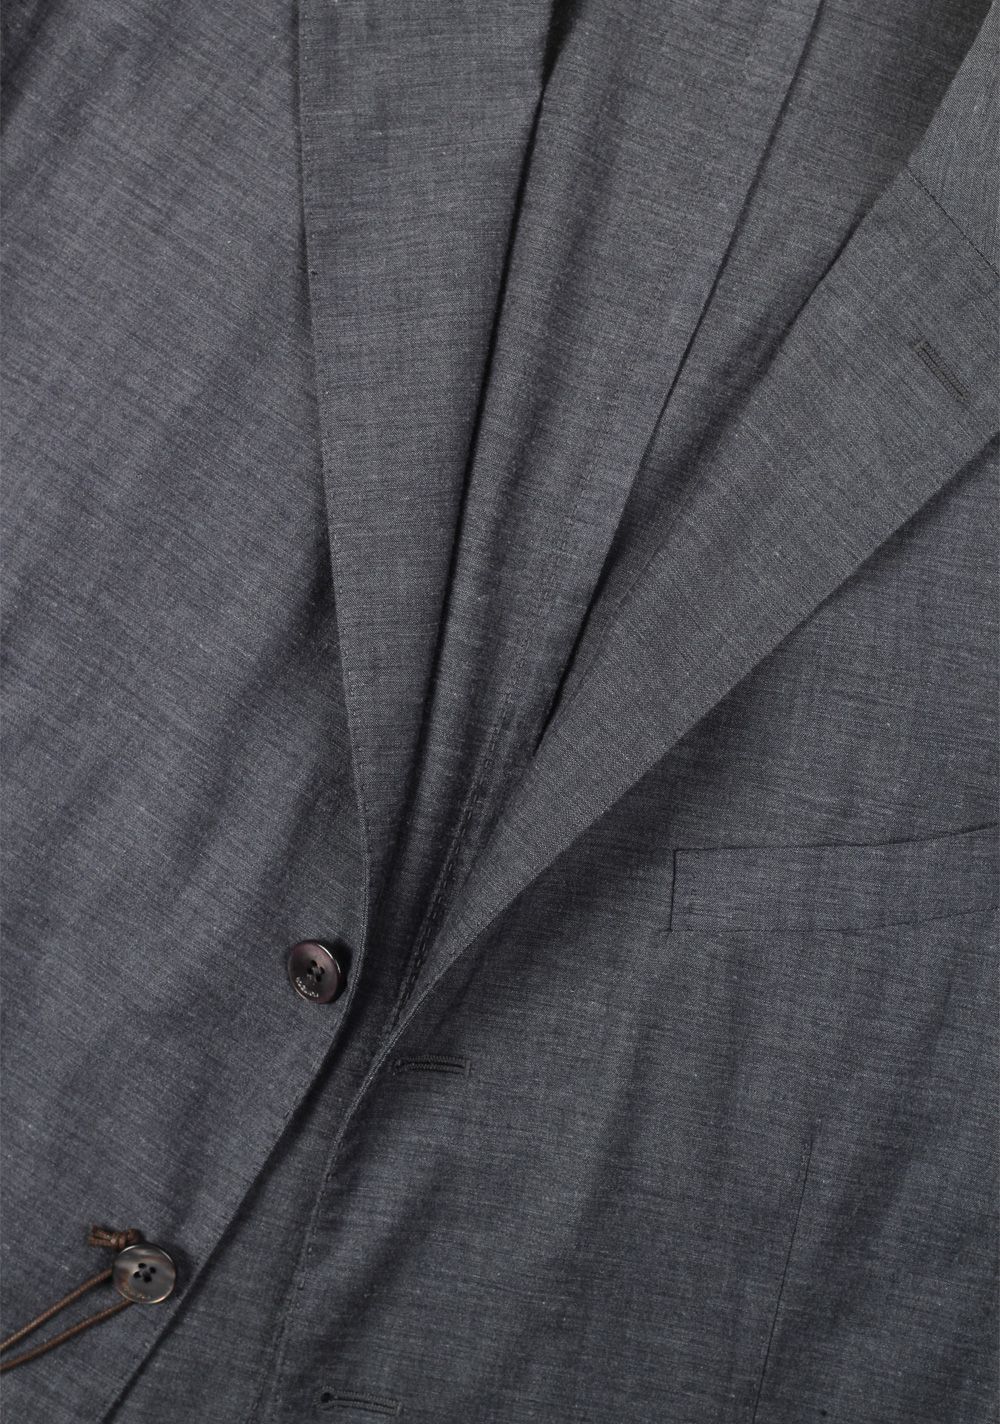 Boglioli K Jacket Gray Sport Coat Size 54L / 44L U.S. | Costume Limité